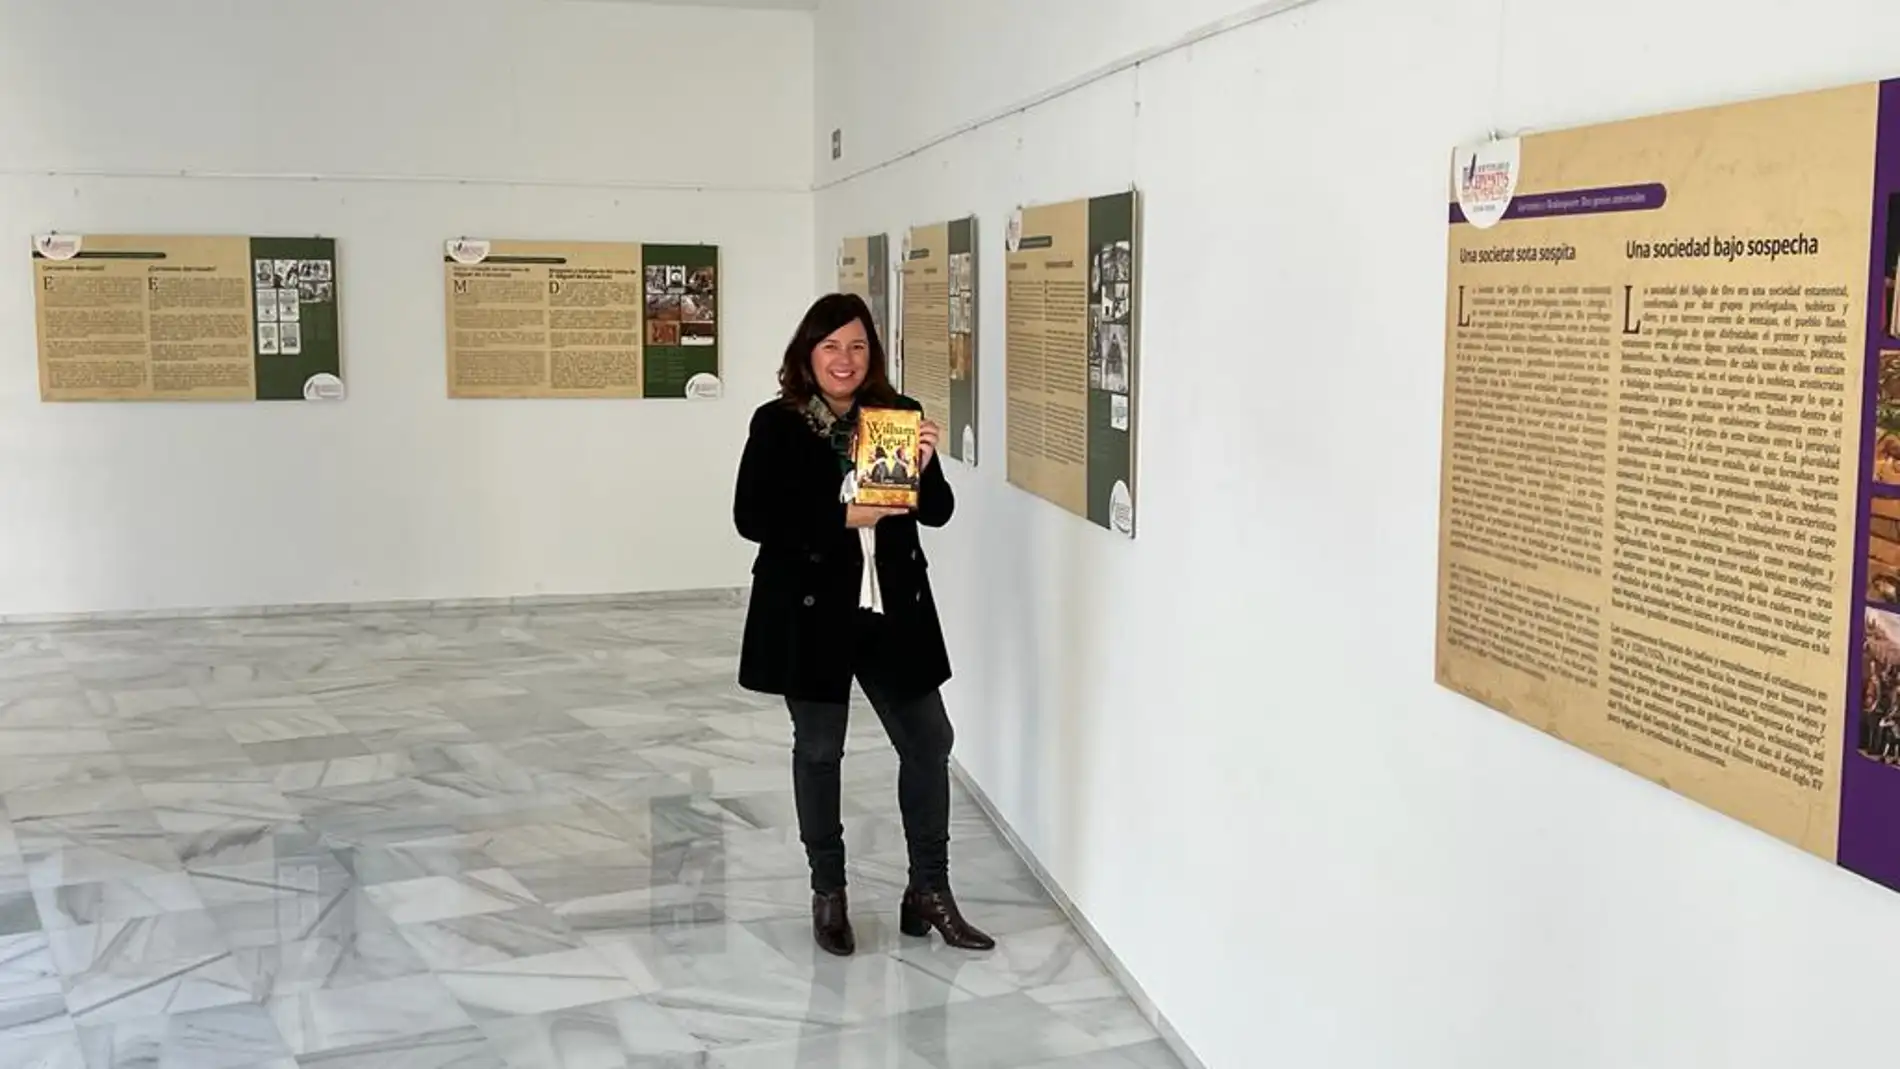 Cultura inaugura la exposición “Cervantes-Shakespeare: Dos genios universales” en la Biblioteca María Moliner   